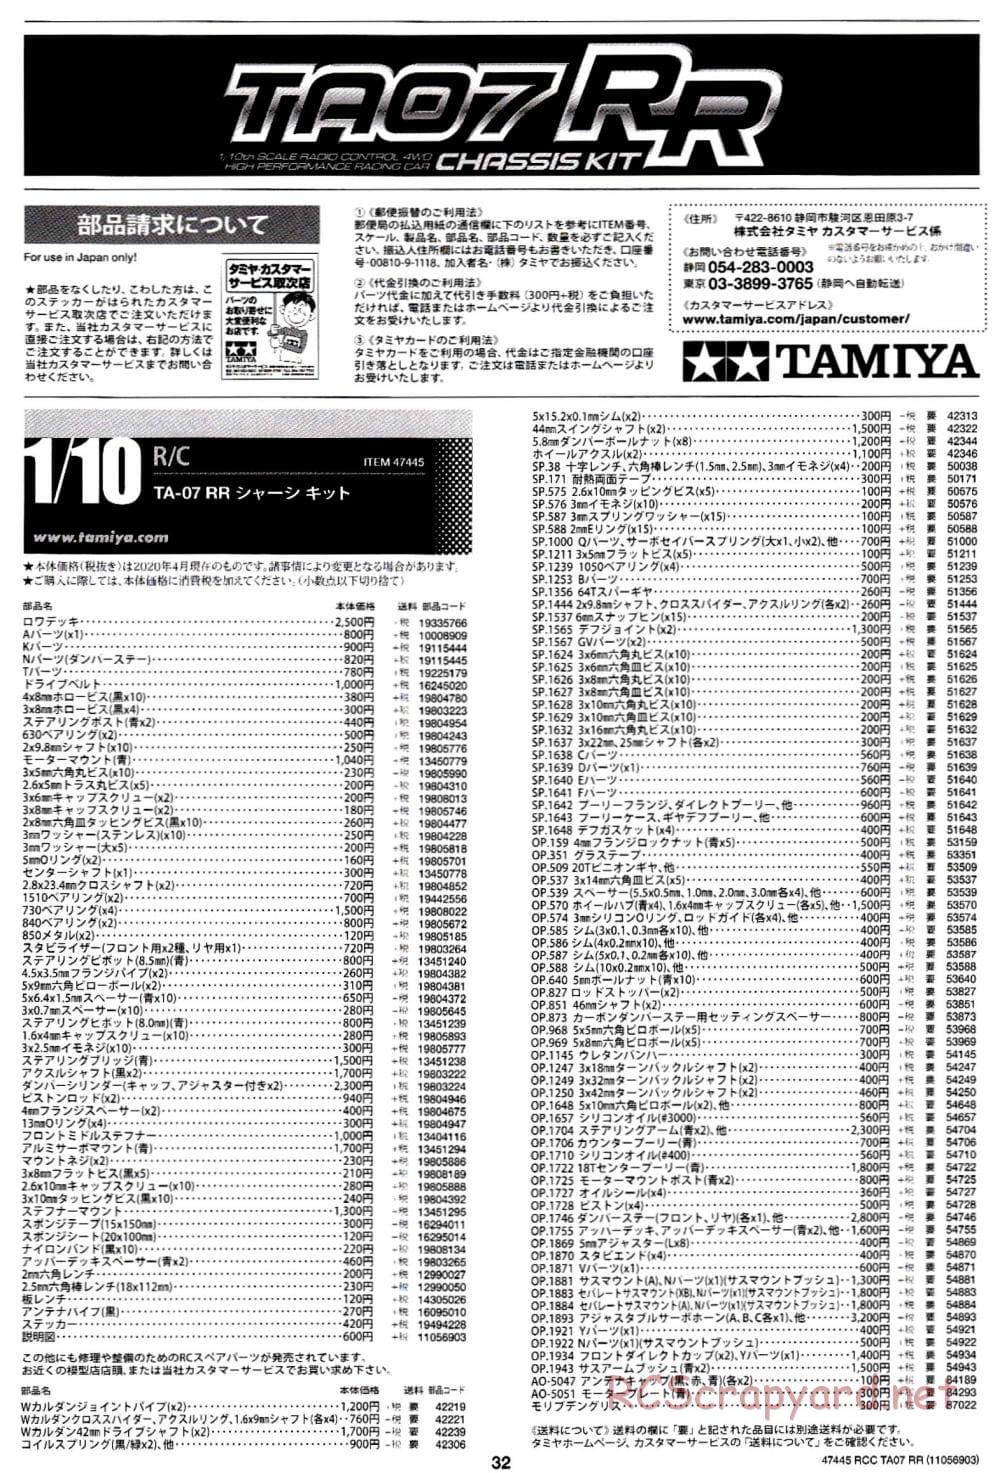 Tamiya - TA07 RR Chassis - Manual - Page 32